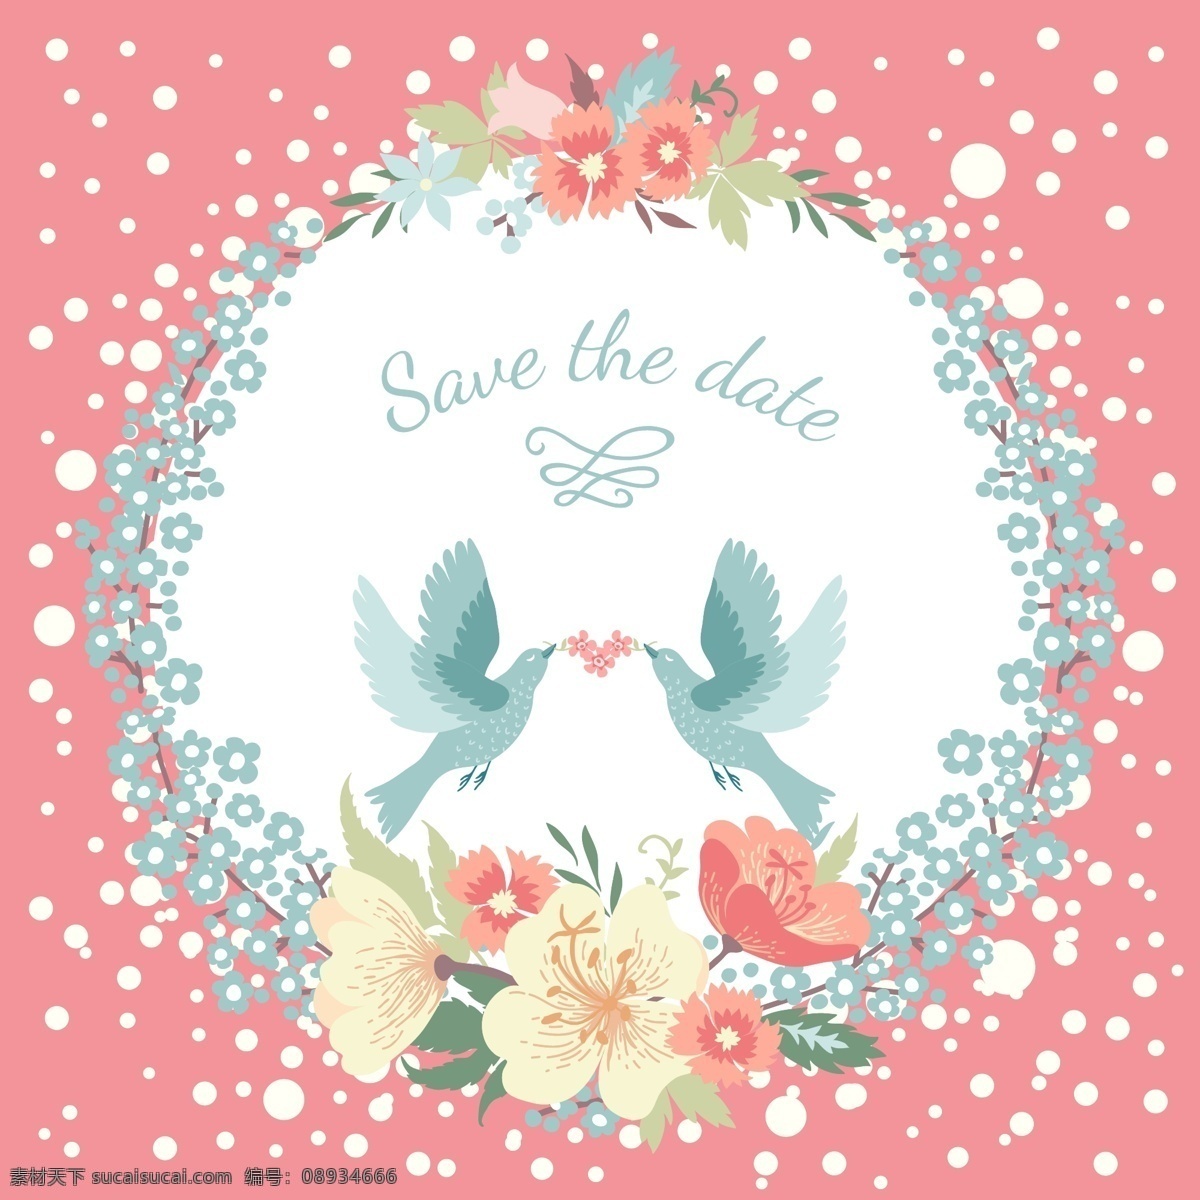 圆环 花朵 小鸟 婚礼 模板下载 婚礼素材 水彩花朵 植物花朵 美丽鲜花 漂亮花朵 花草树木 生物世界 矢量素材